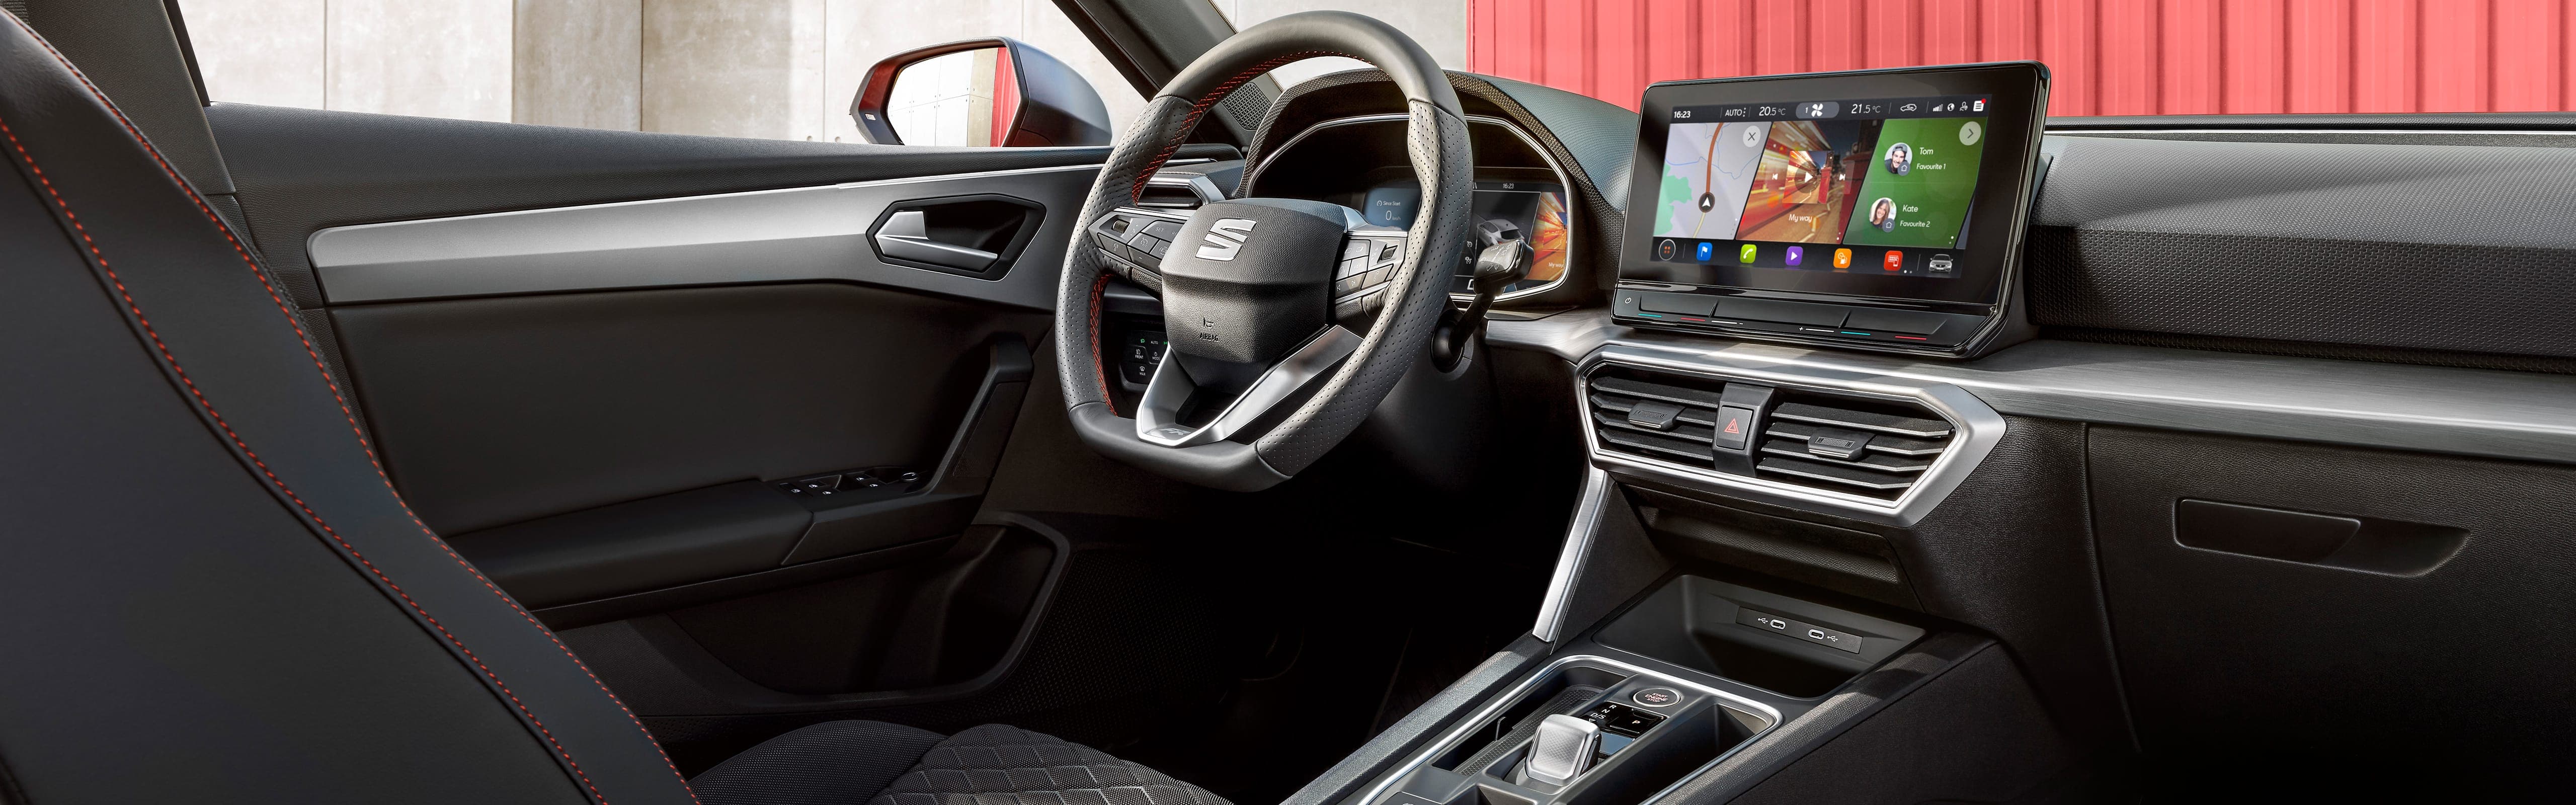 Nowoczesne wnętrzne obszyte wysokiej jakości materiałami w nowym SEAT-cie Leonie